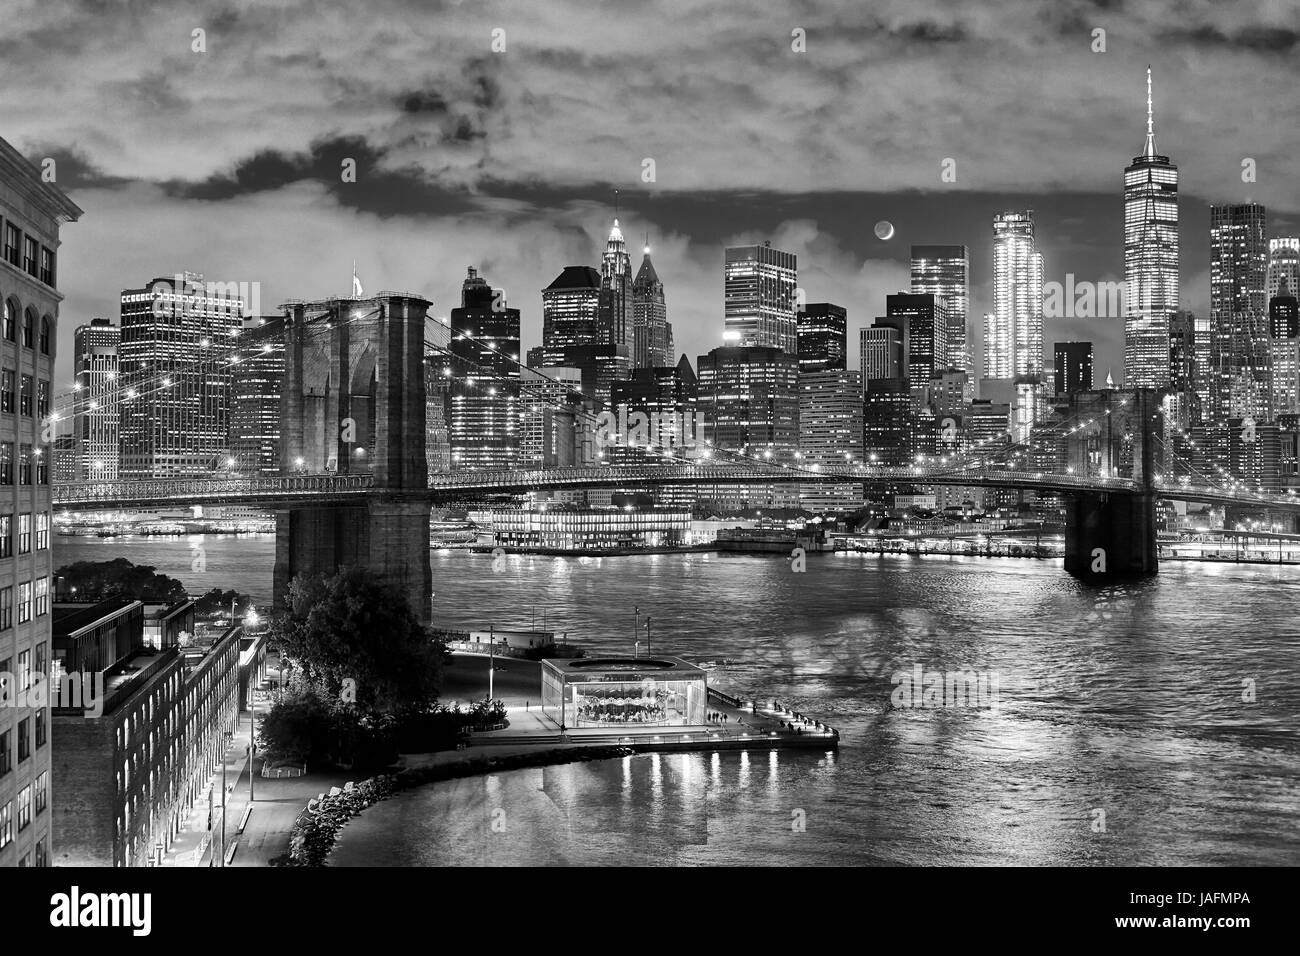 Photo en noir et blanc du pont de Brooklyn et Manhattan avec lune croissante visible la nuit, New York City, USA. Banque D'Images